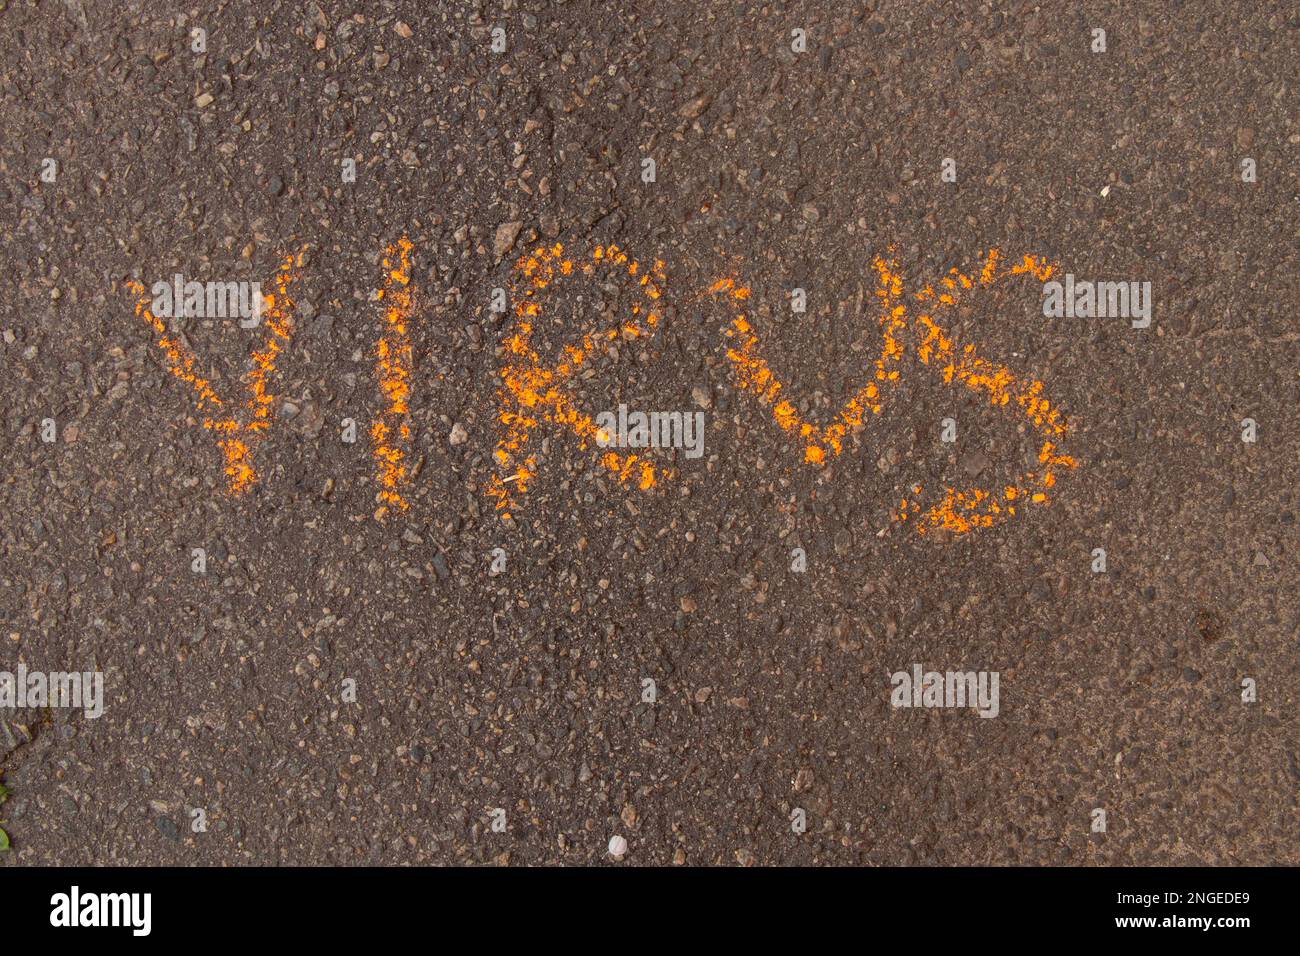 Das Wort Virus wird in englischer Kreide auf Asphalt geschrieben Stockfoto